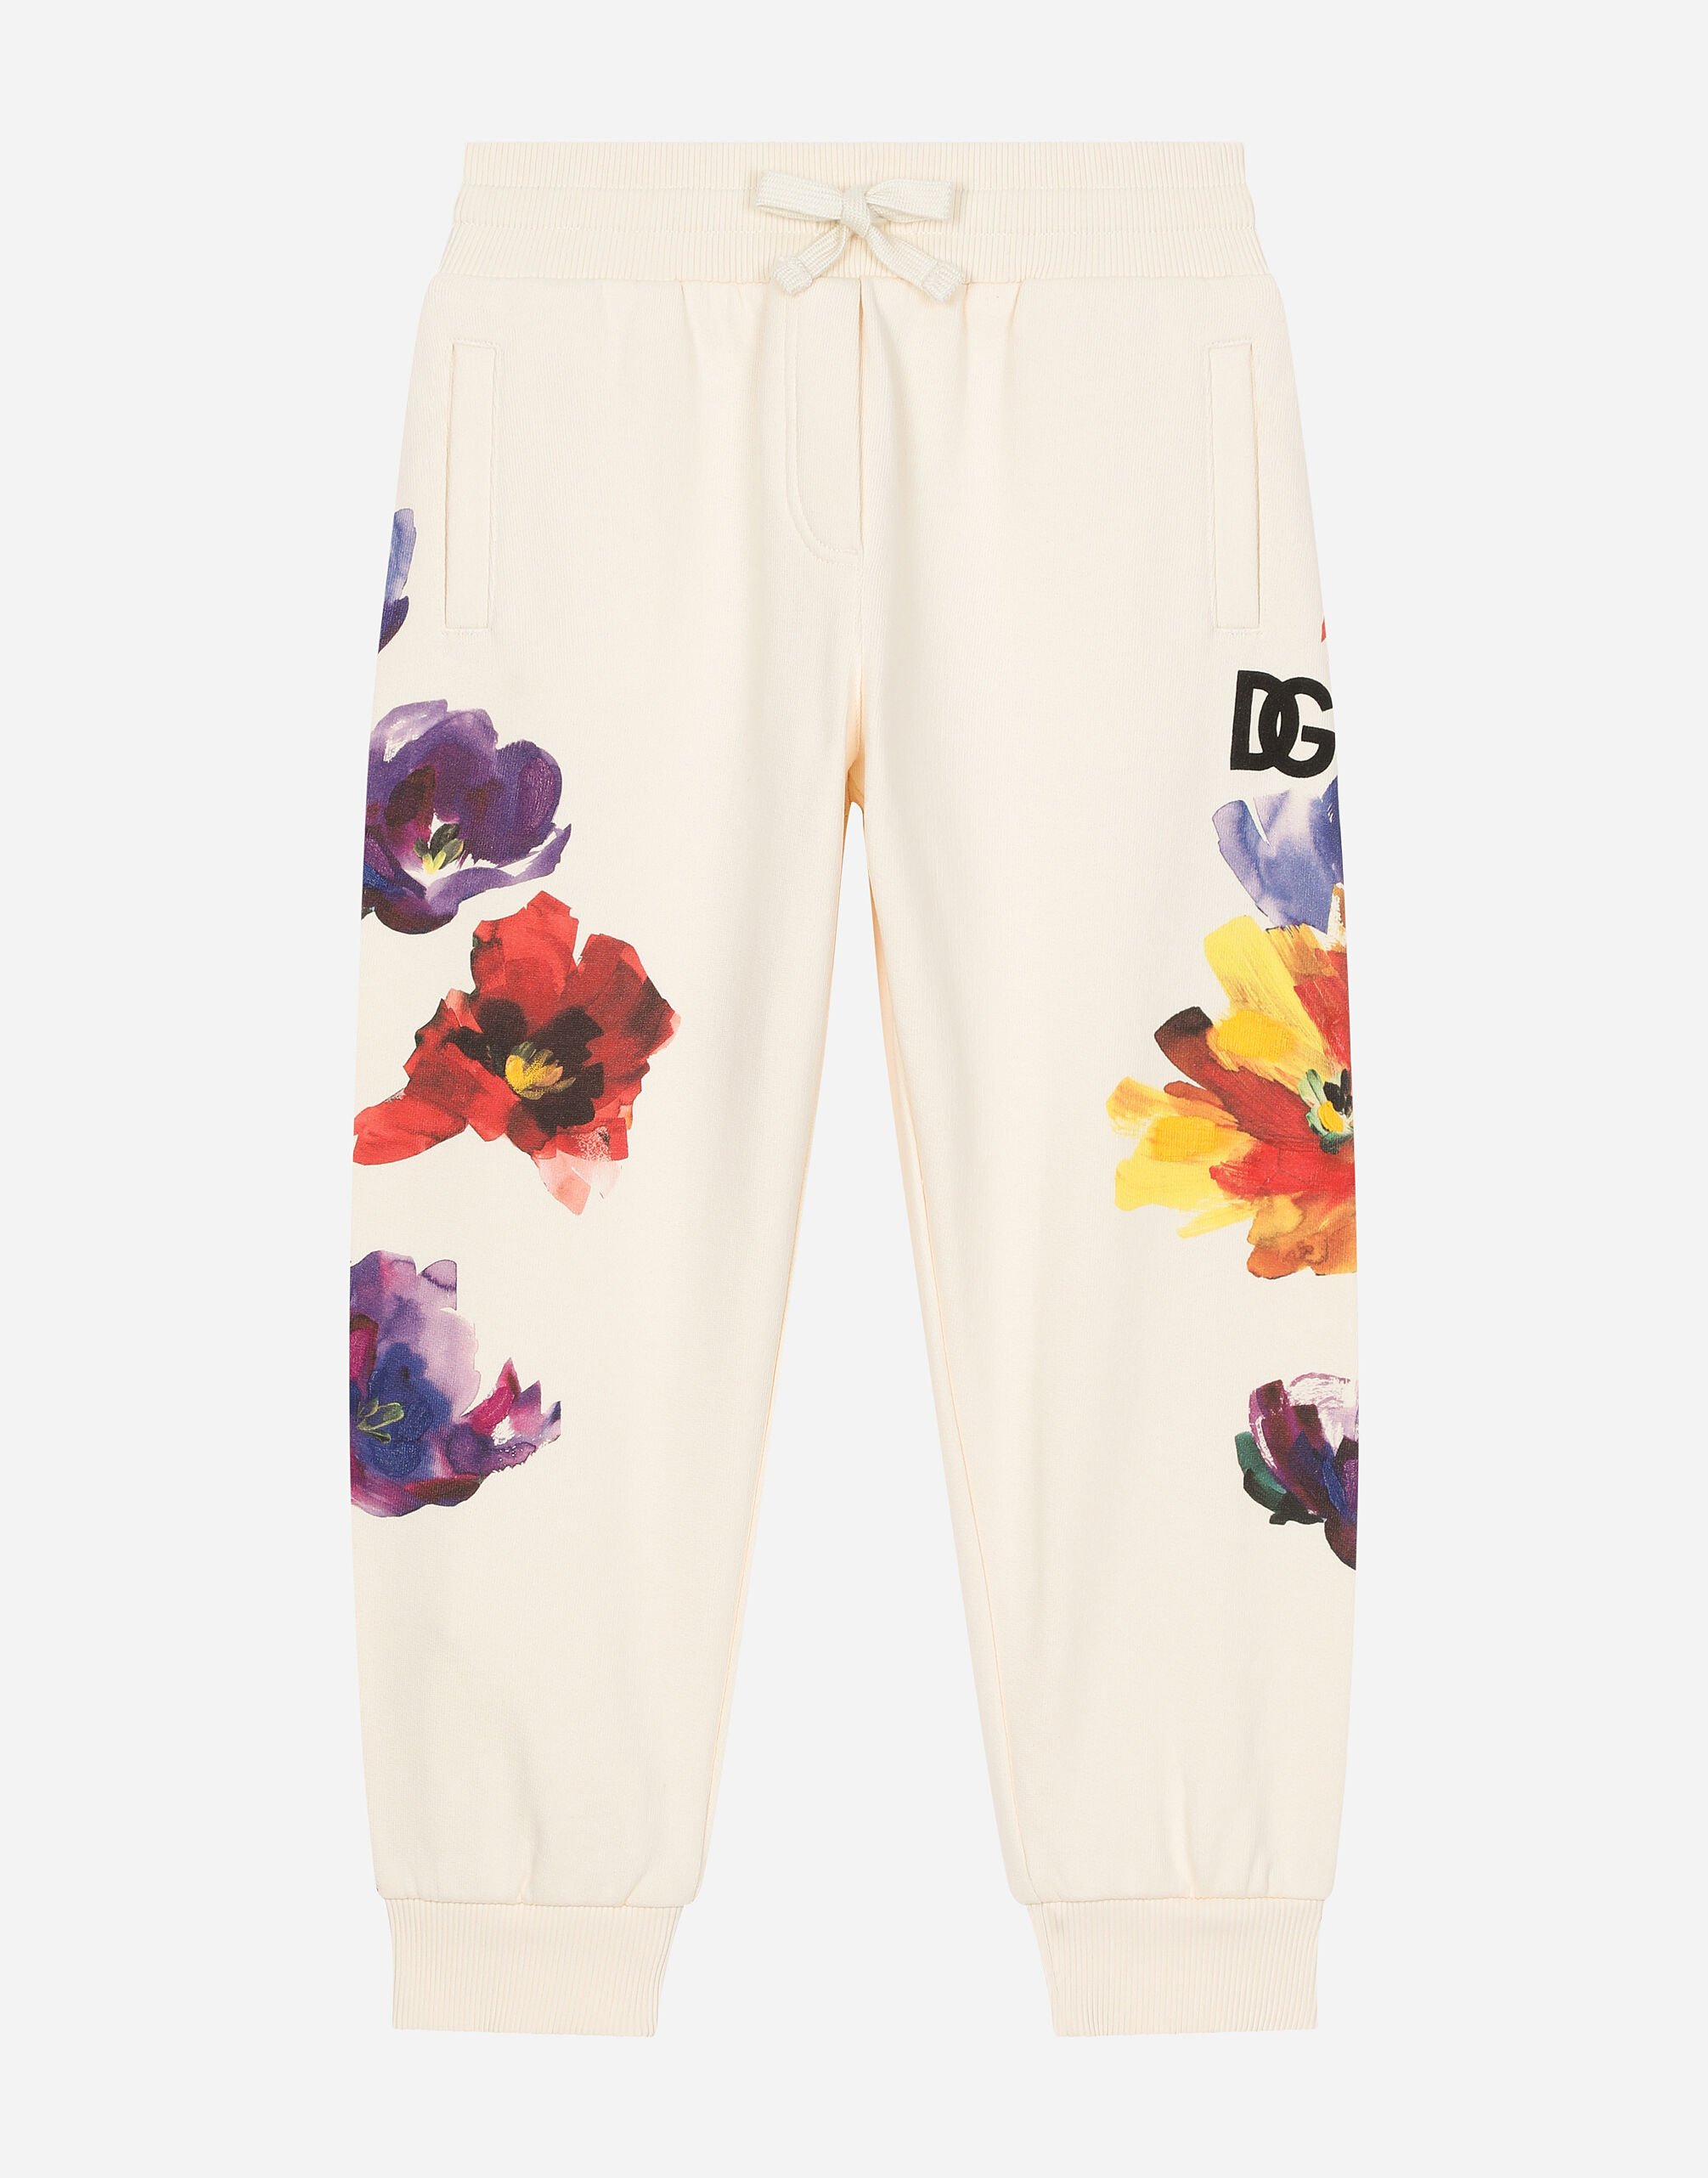 Dolce & Gabbana Pantaloni jogging in jersey stampa fiori Stampa L54I94HS5Q4